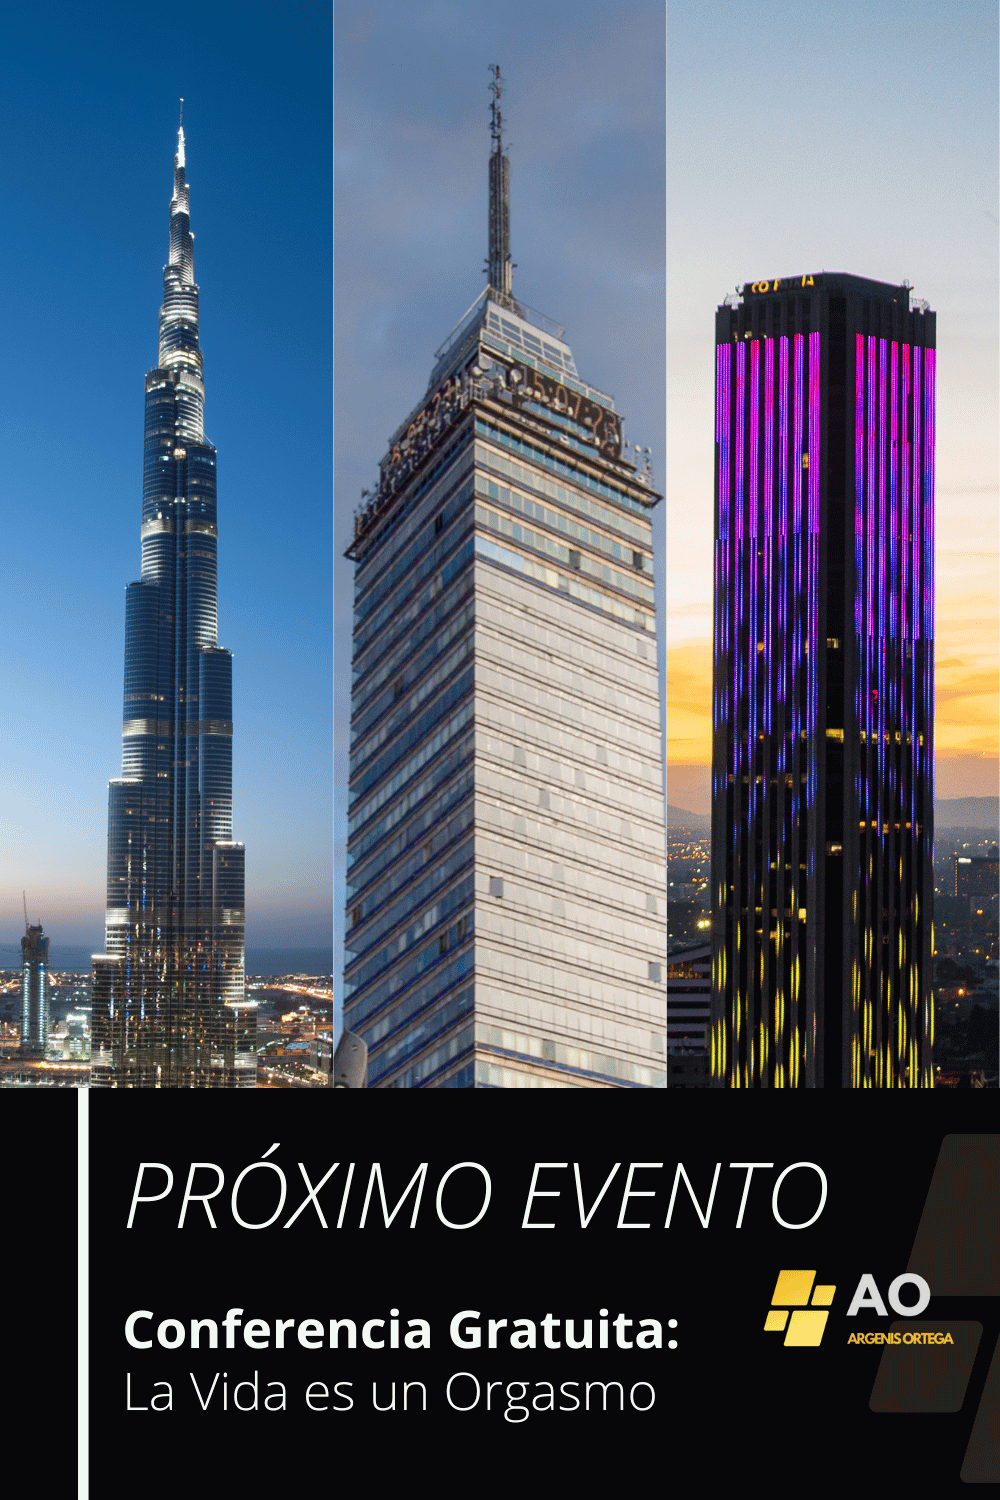 Imagen dividida en tres partes: Torre Colpatria en Bogotá, Landmark en CDMX y Torre Khalifa en Dubai, con un cuadro de texto destacando la conferencia gratuita.